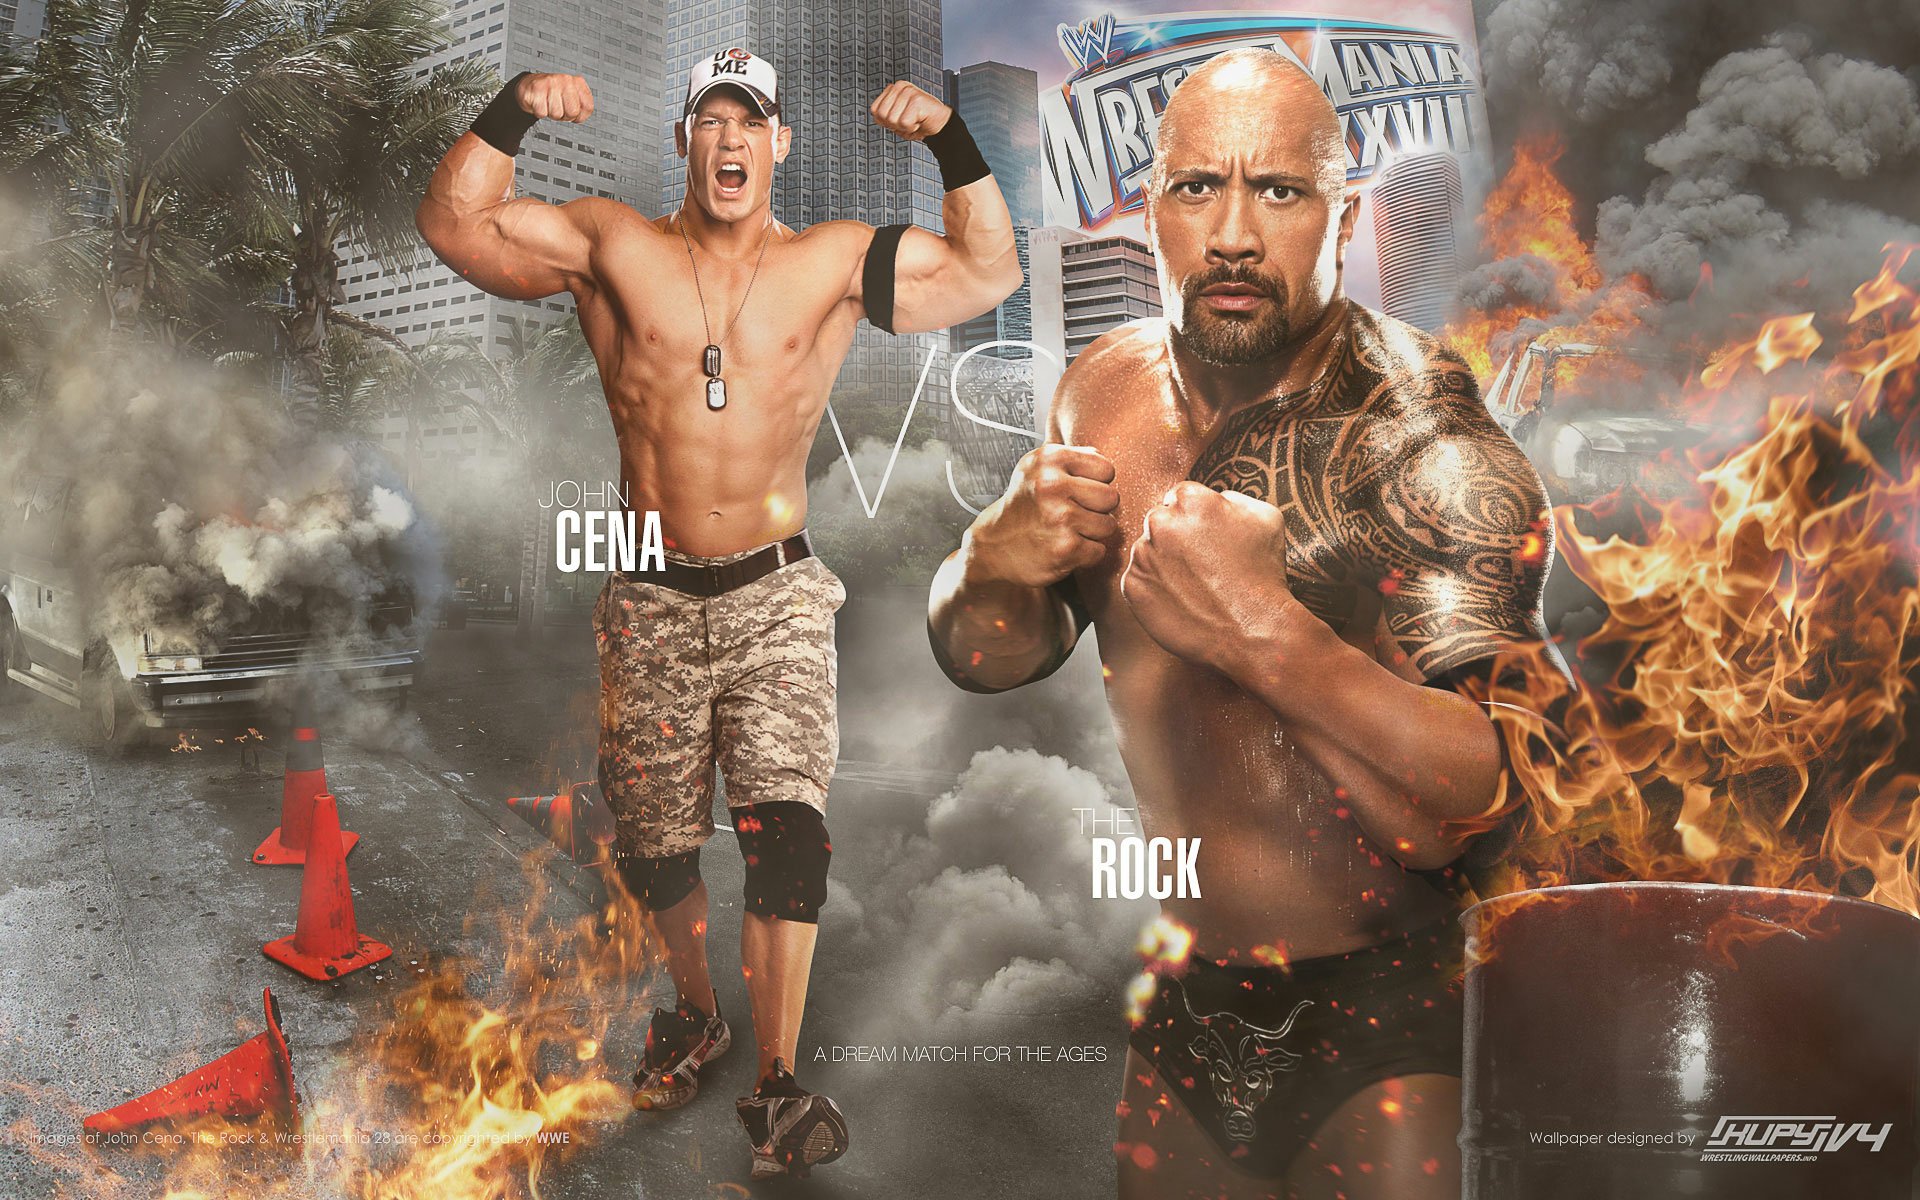 the rock wrestler wallpaper